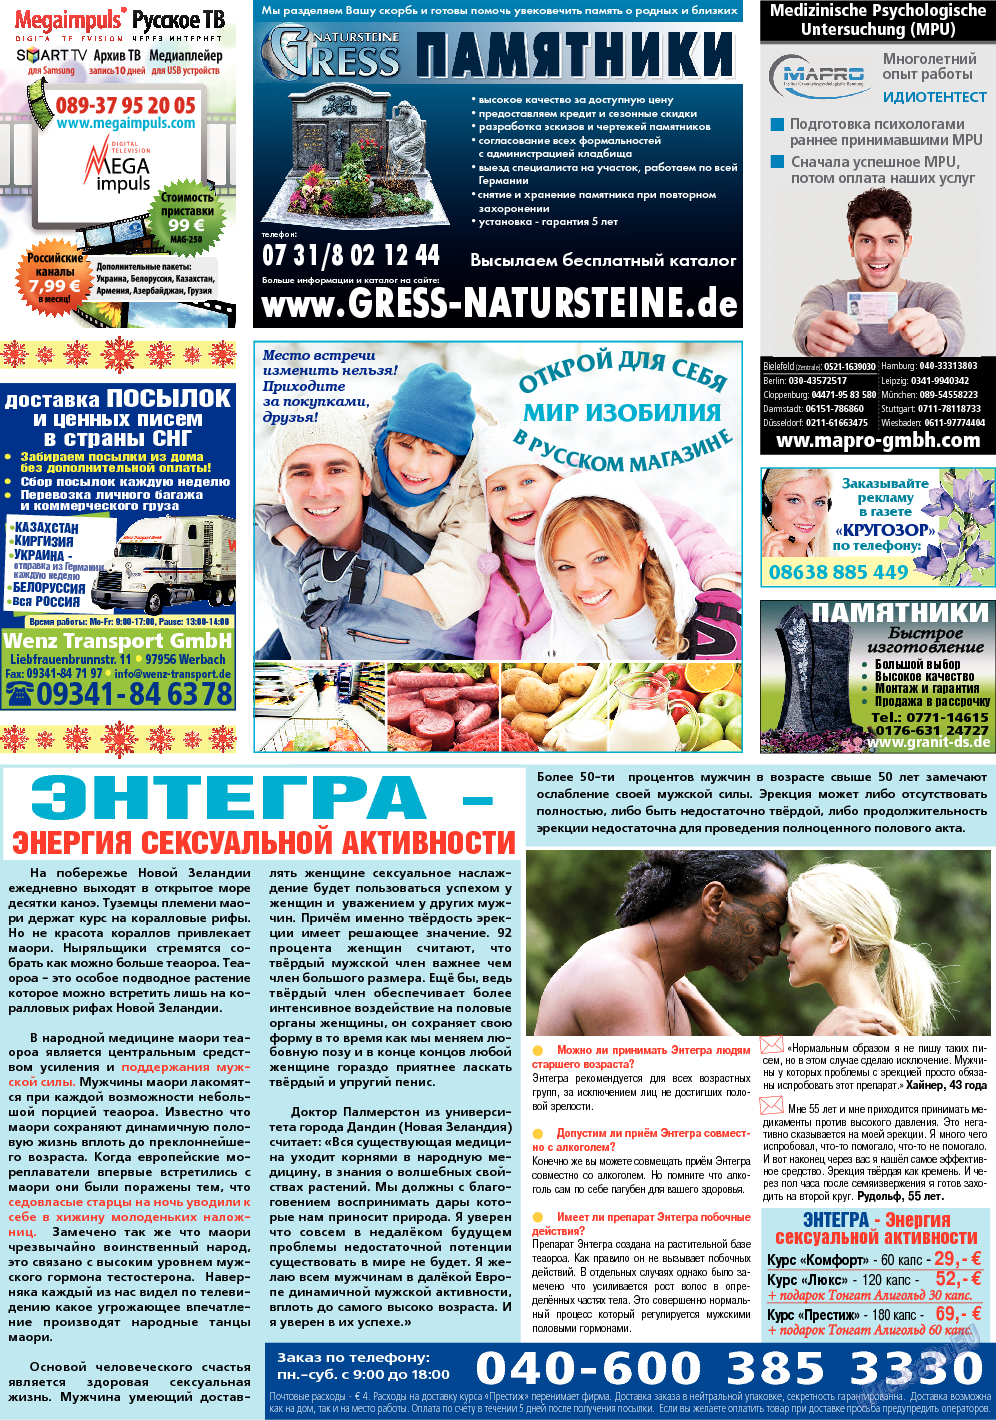 Кругозор (газета). 2014 год, номер 1, стр. 32